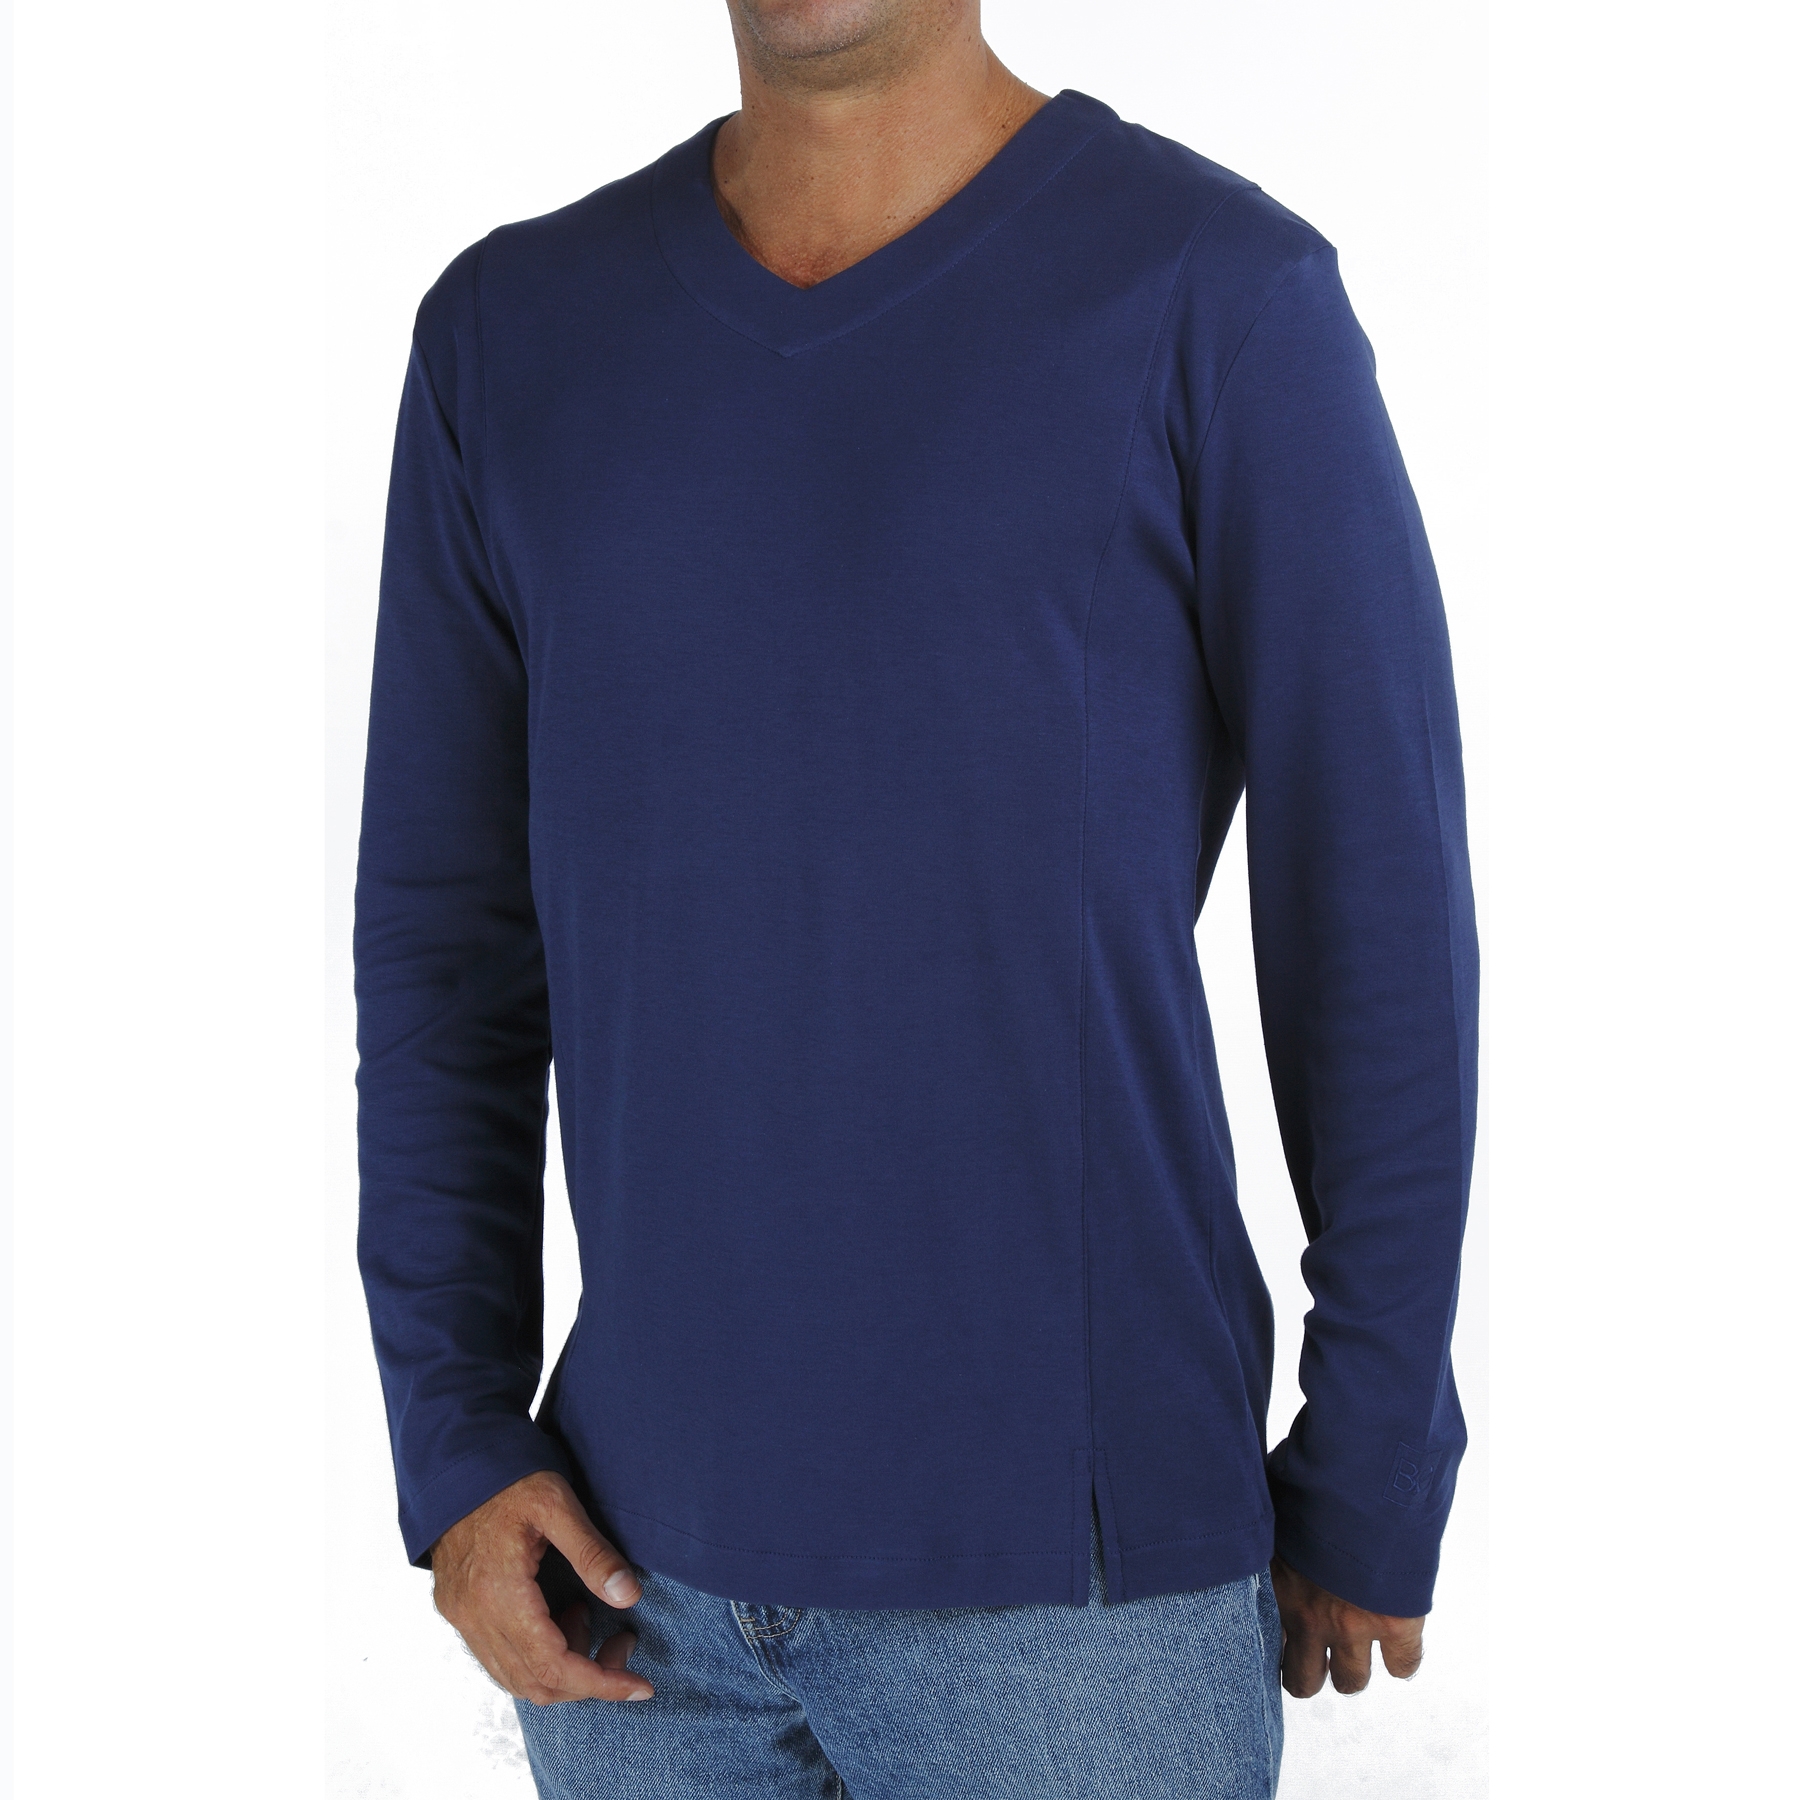 Long Sleeve V neck tshirt men organic pima cotton slowfashion quality blue